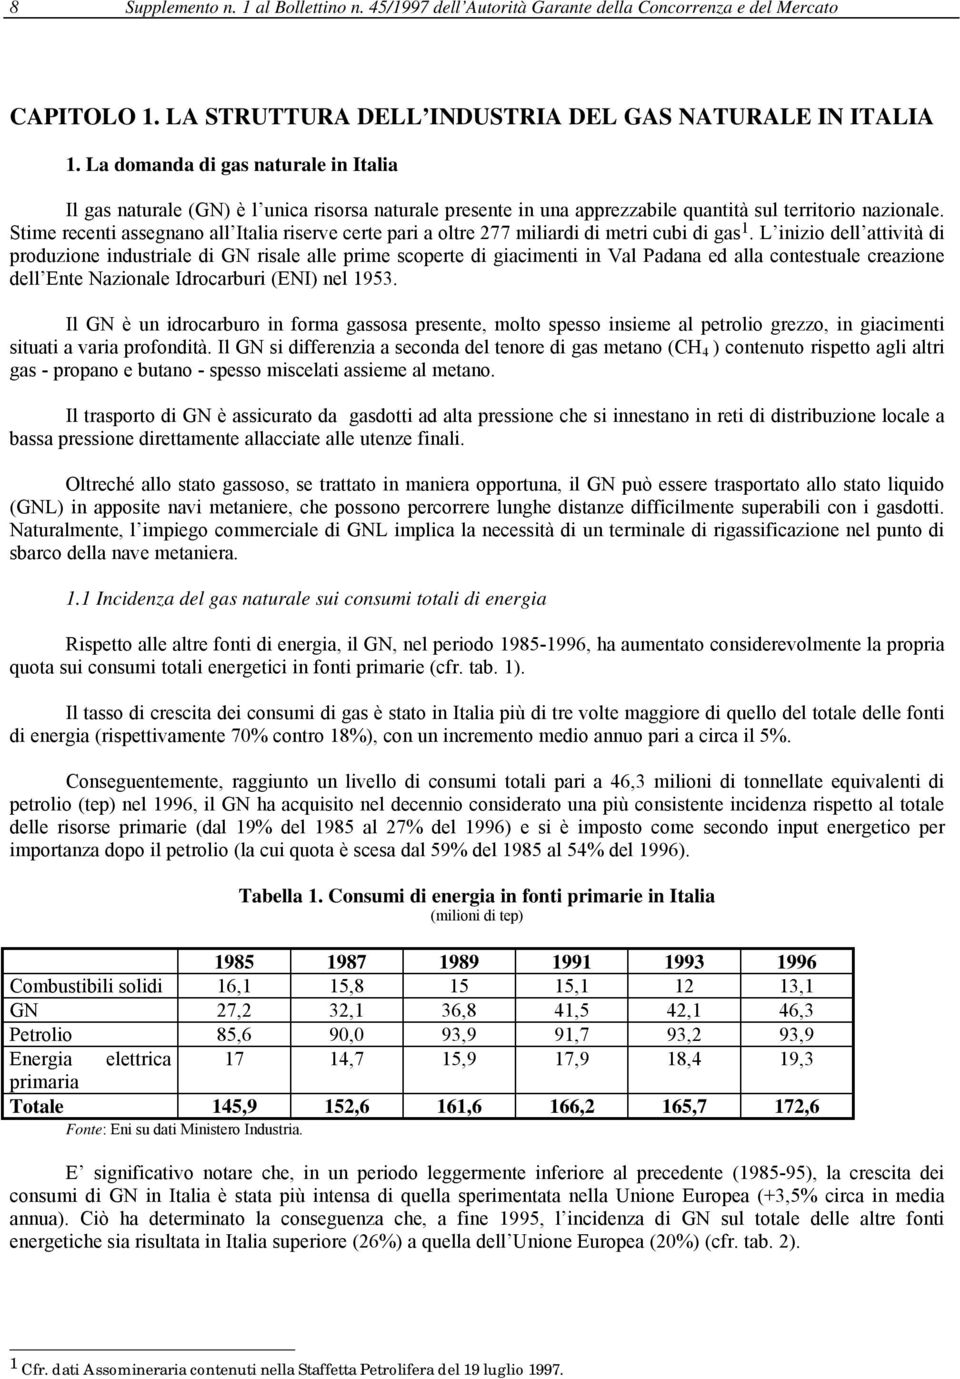 Stime recenti assegnano all Italia riserve certe pari a oltre 277 miliardi di metri cubi di gas 1.